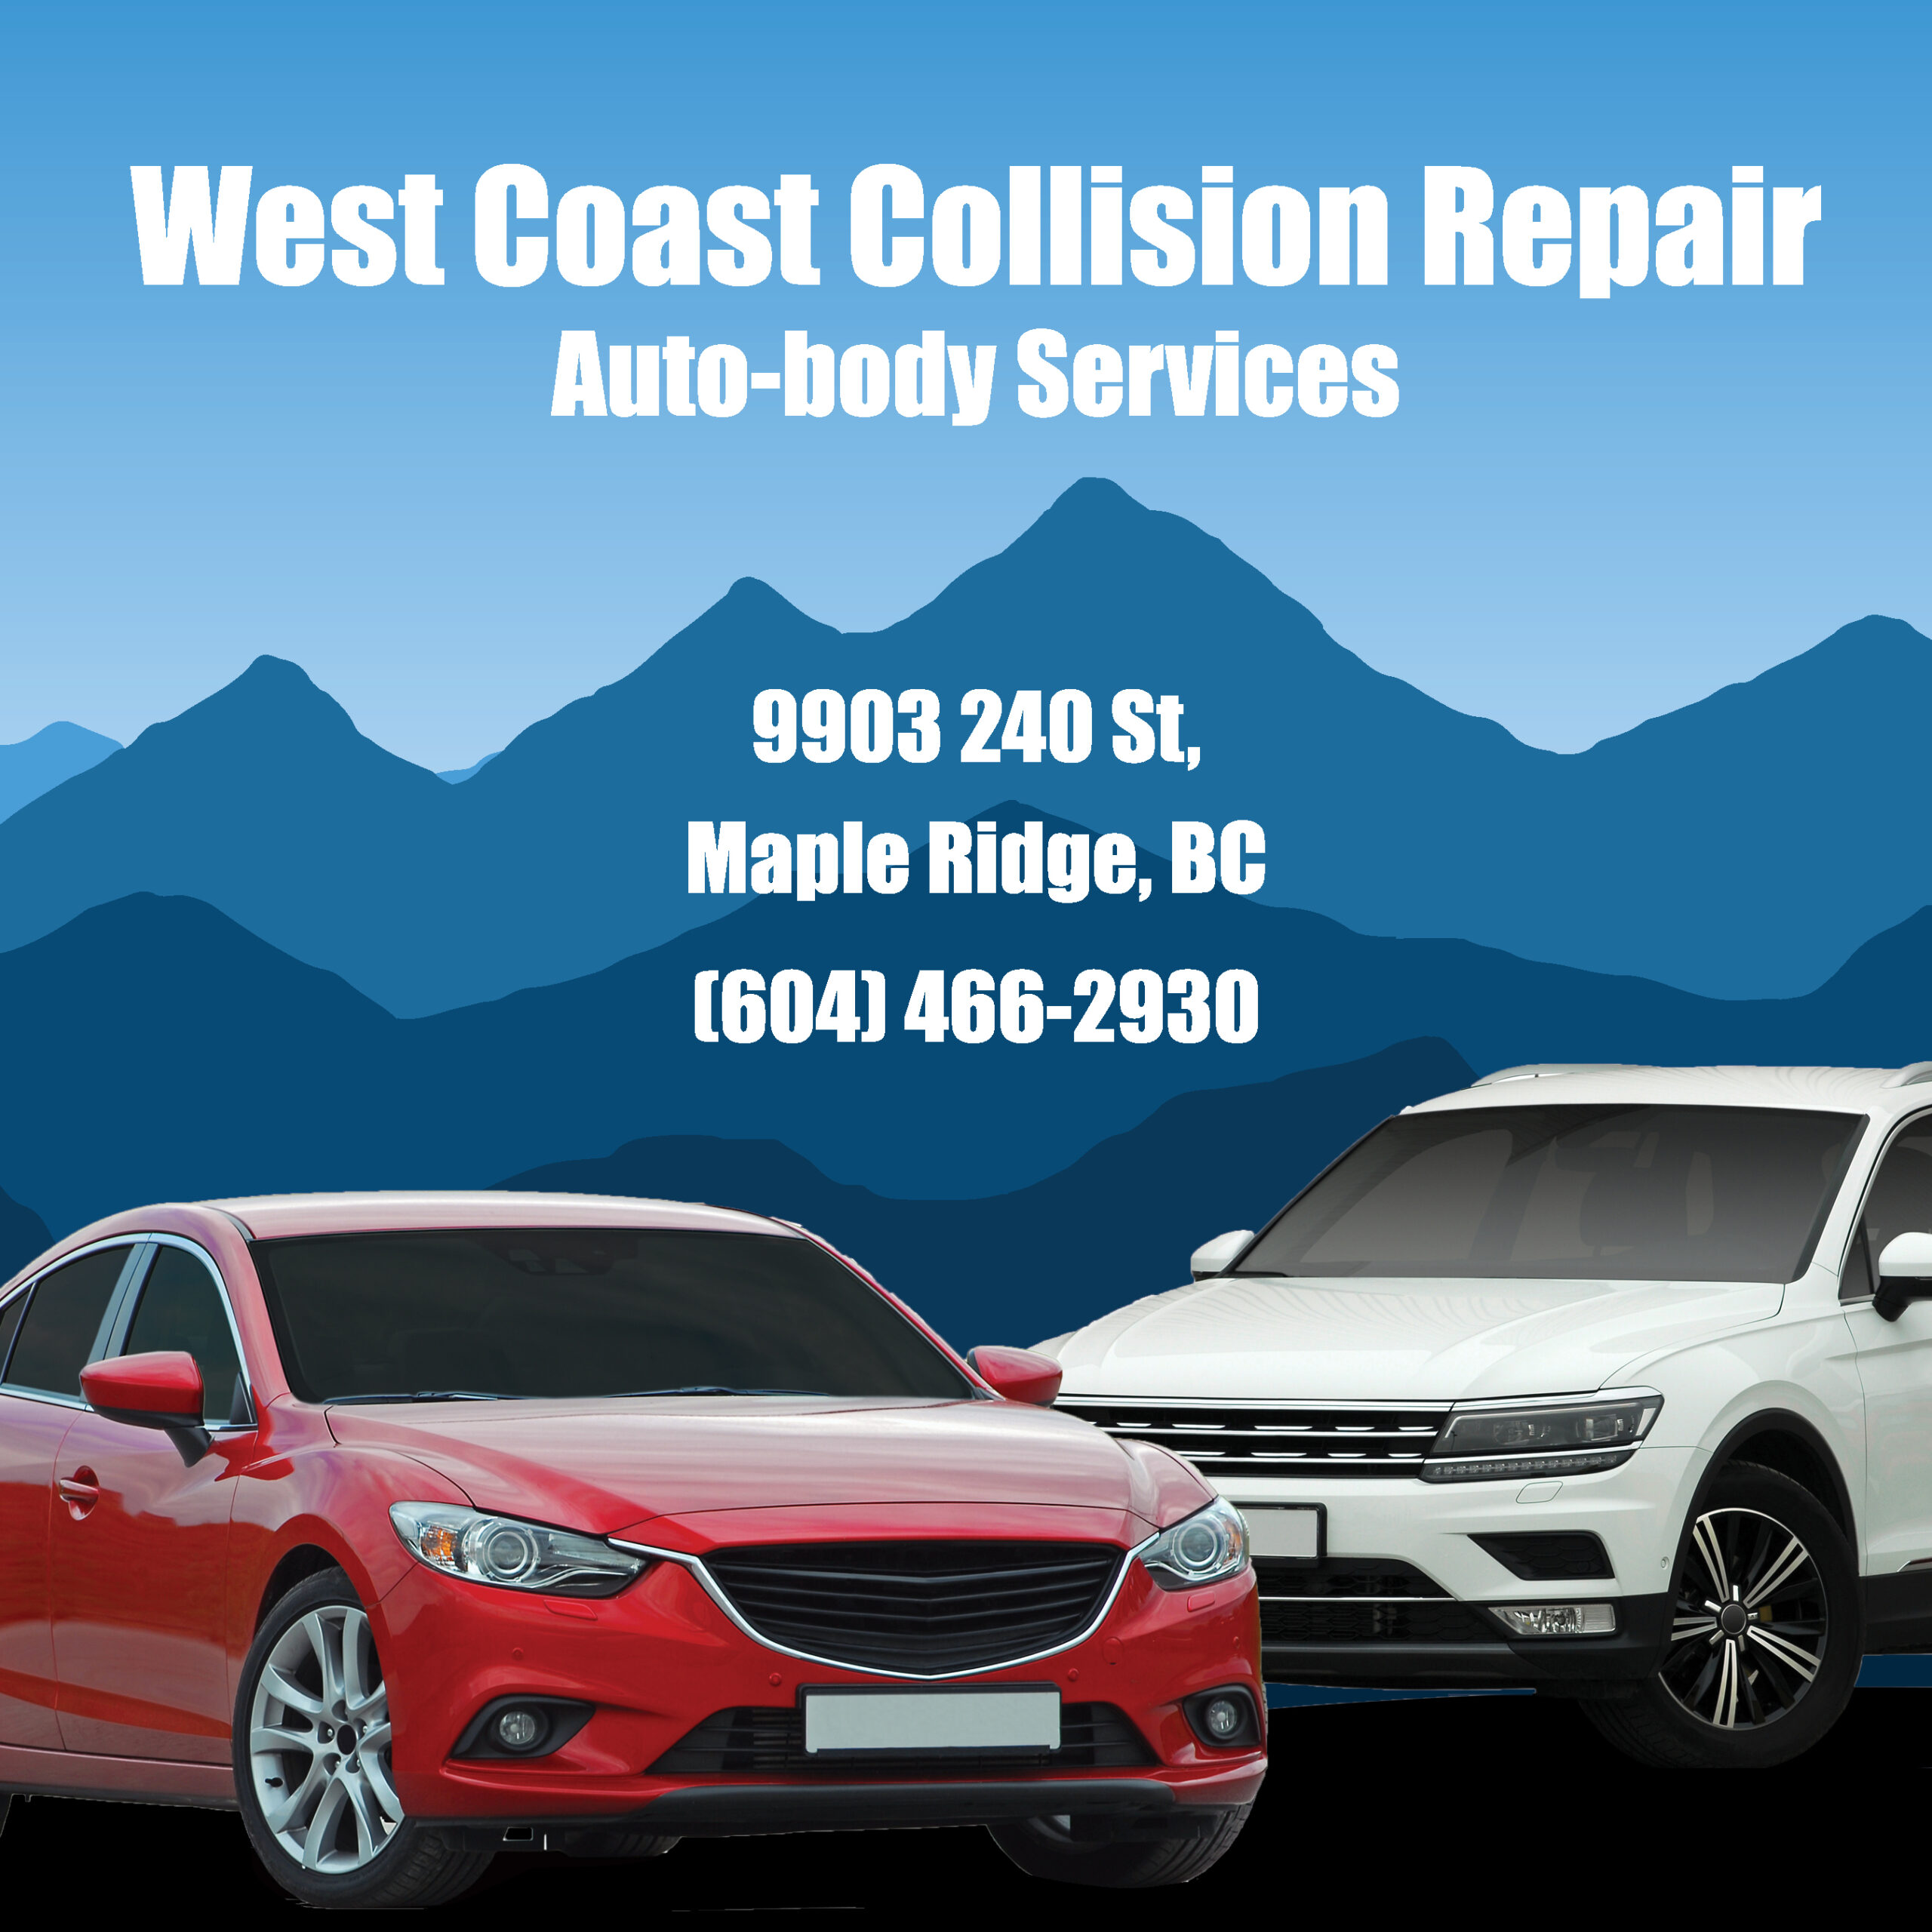 West Coast Collision Repair